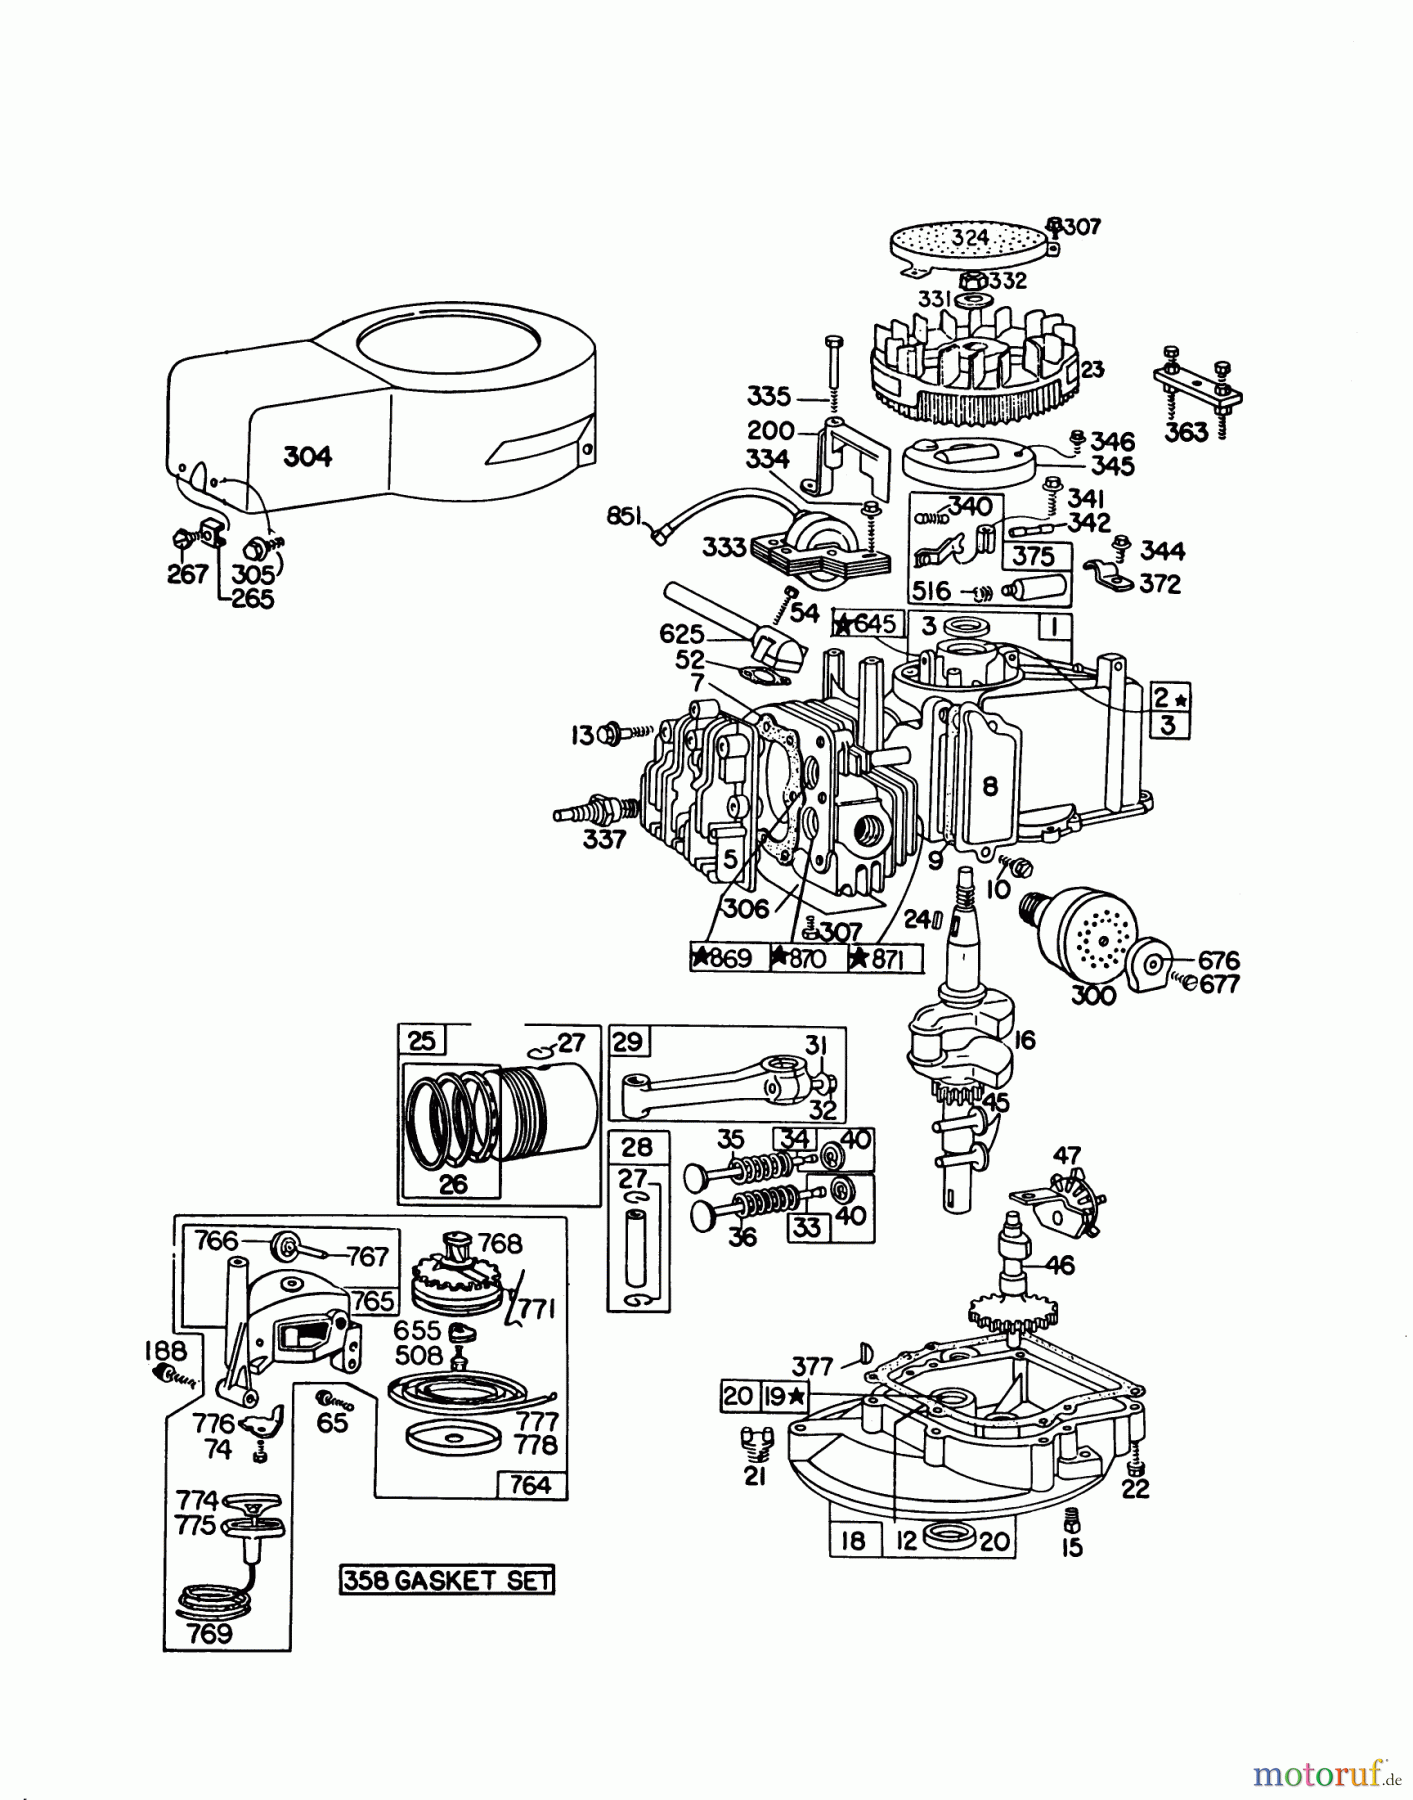  Toro Neu Mowers, Walk-Behind Seite 1 16360 - Toro Whirlwind, 1979 (9000001-9999999) ENGINE BRIGGS & STRATTON MODEL 92908-1842-04 FOR 21